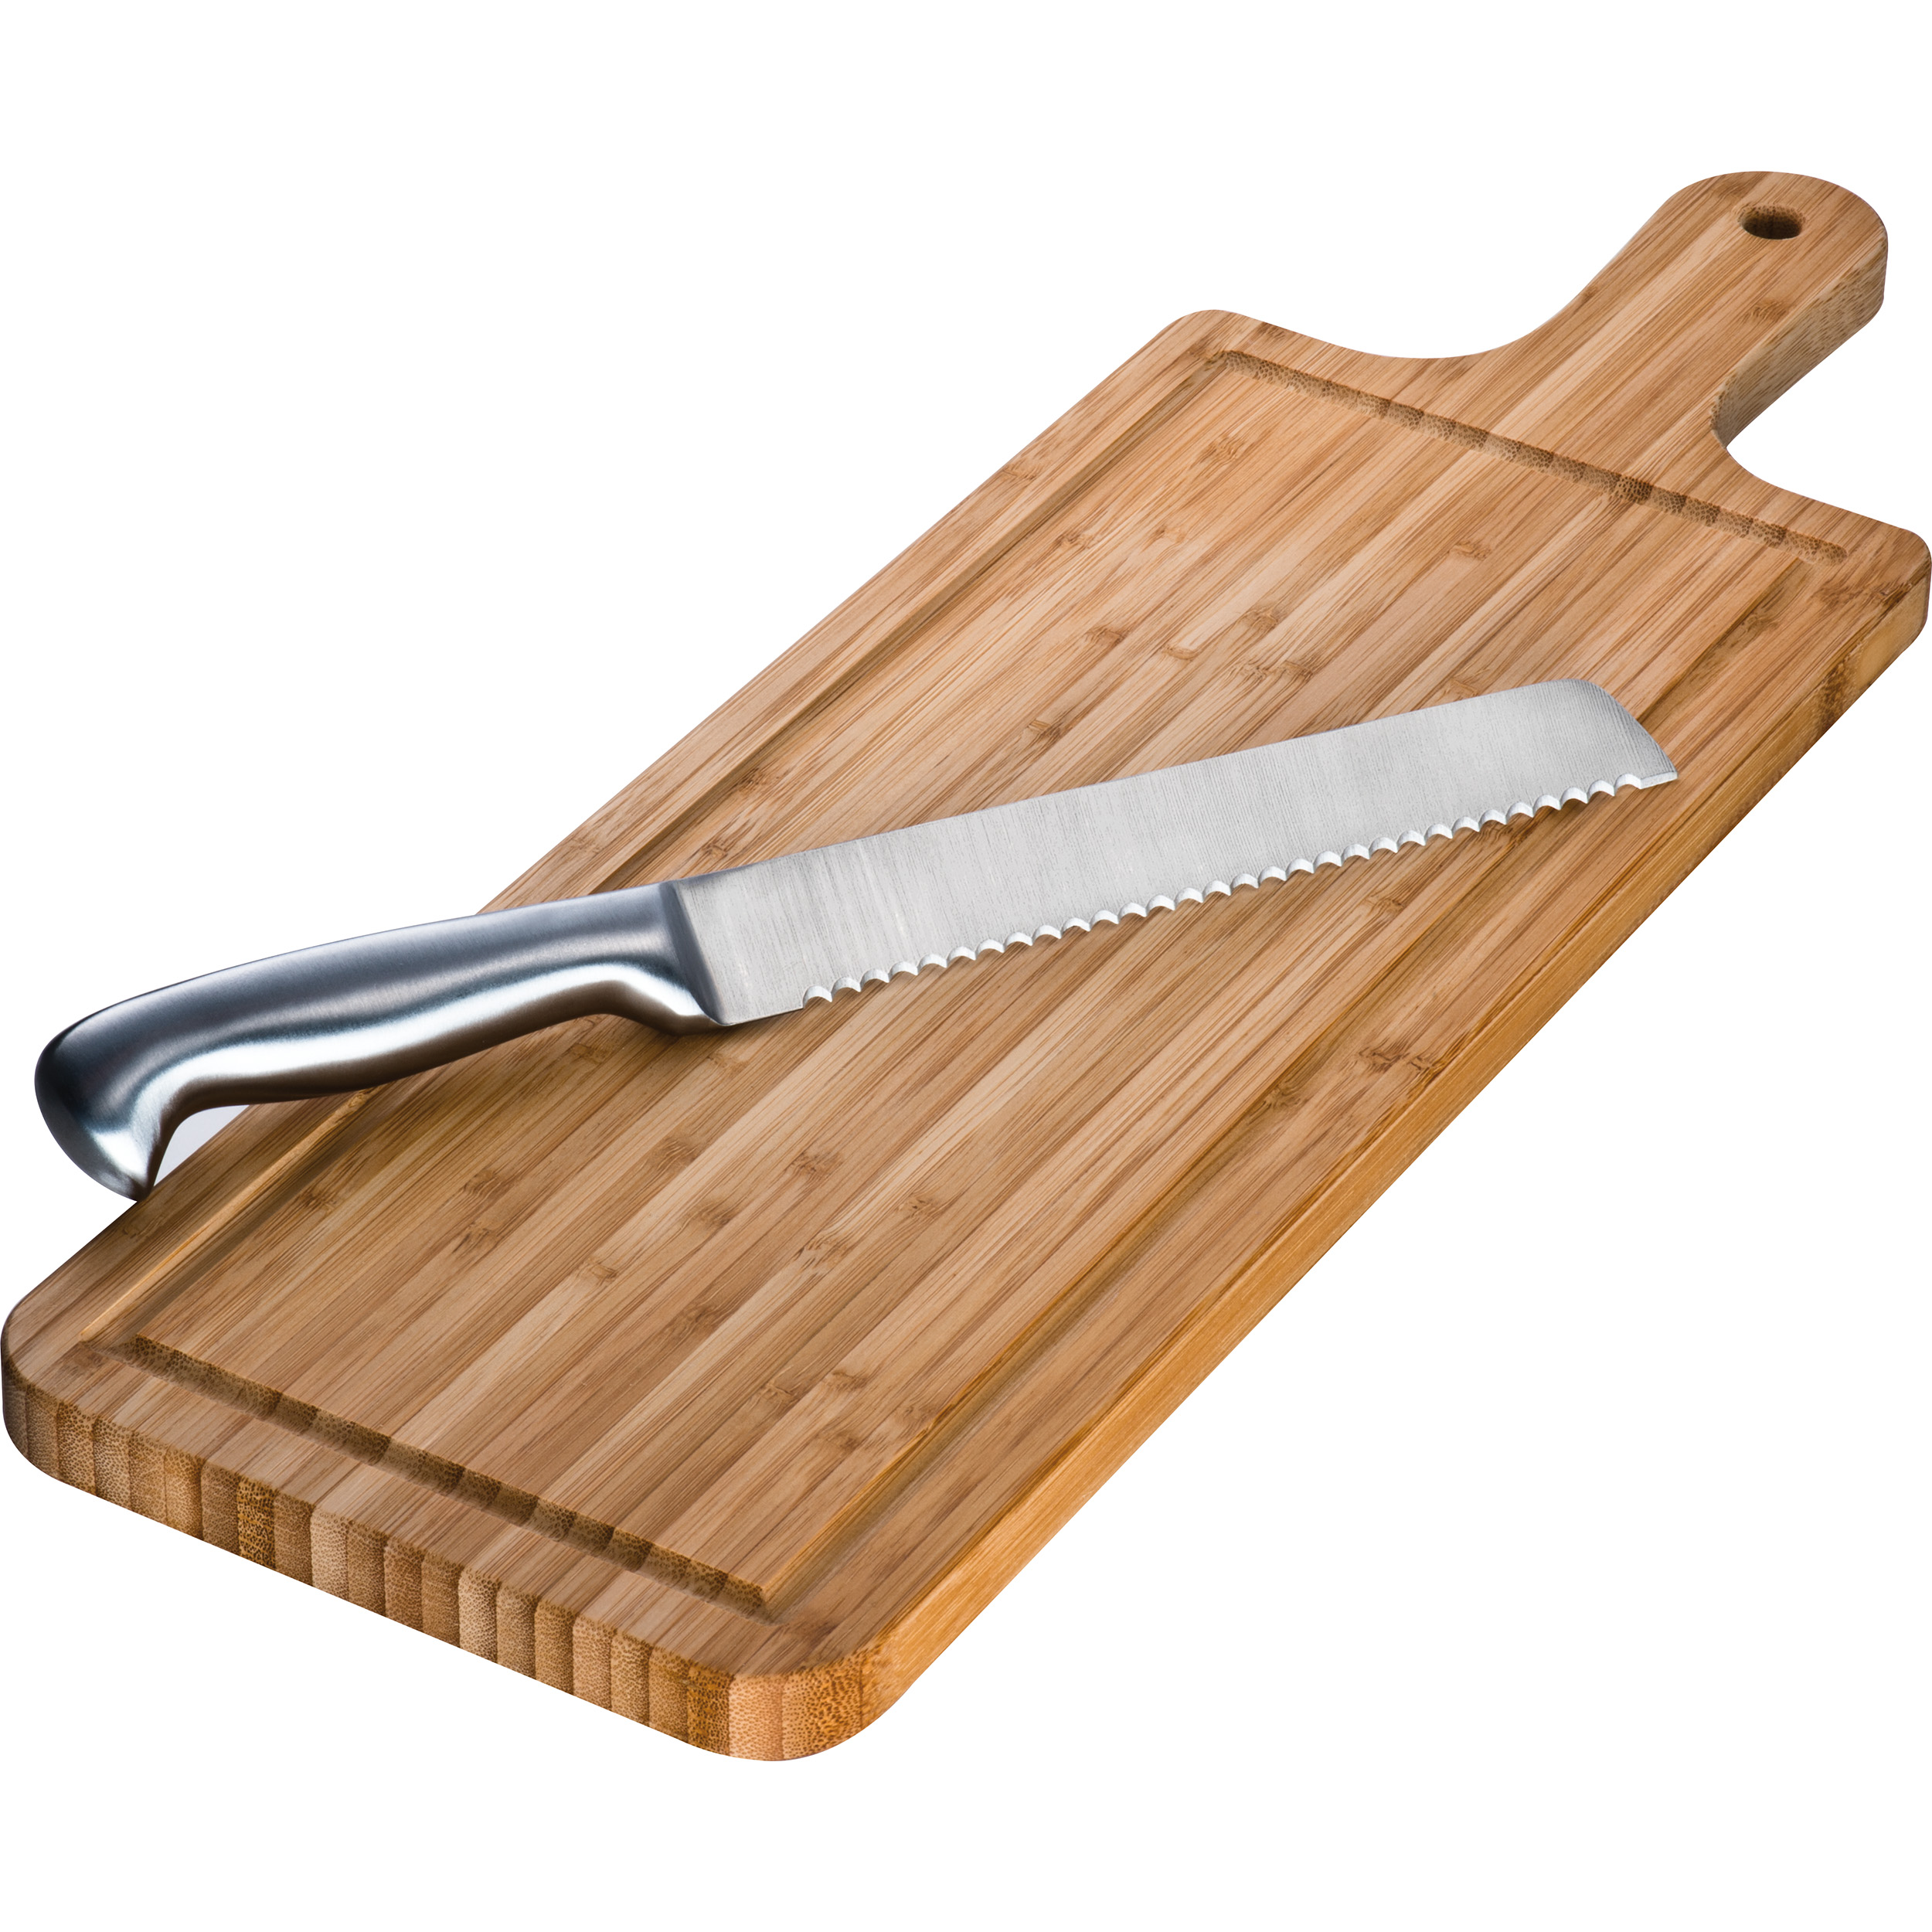 Planche à découper en bambou avec ensemble de couteaux à pain en acier inoxydable - Saint-Émilion - Zaprinta France